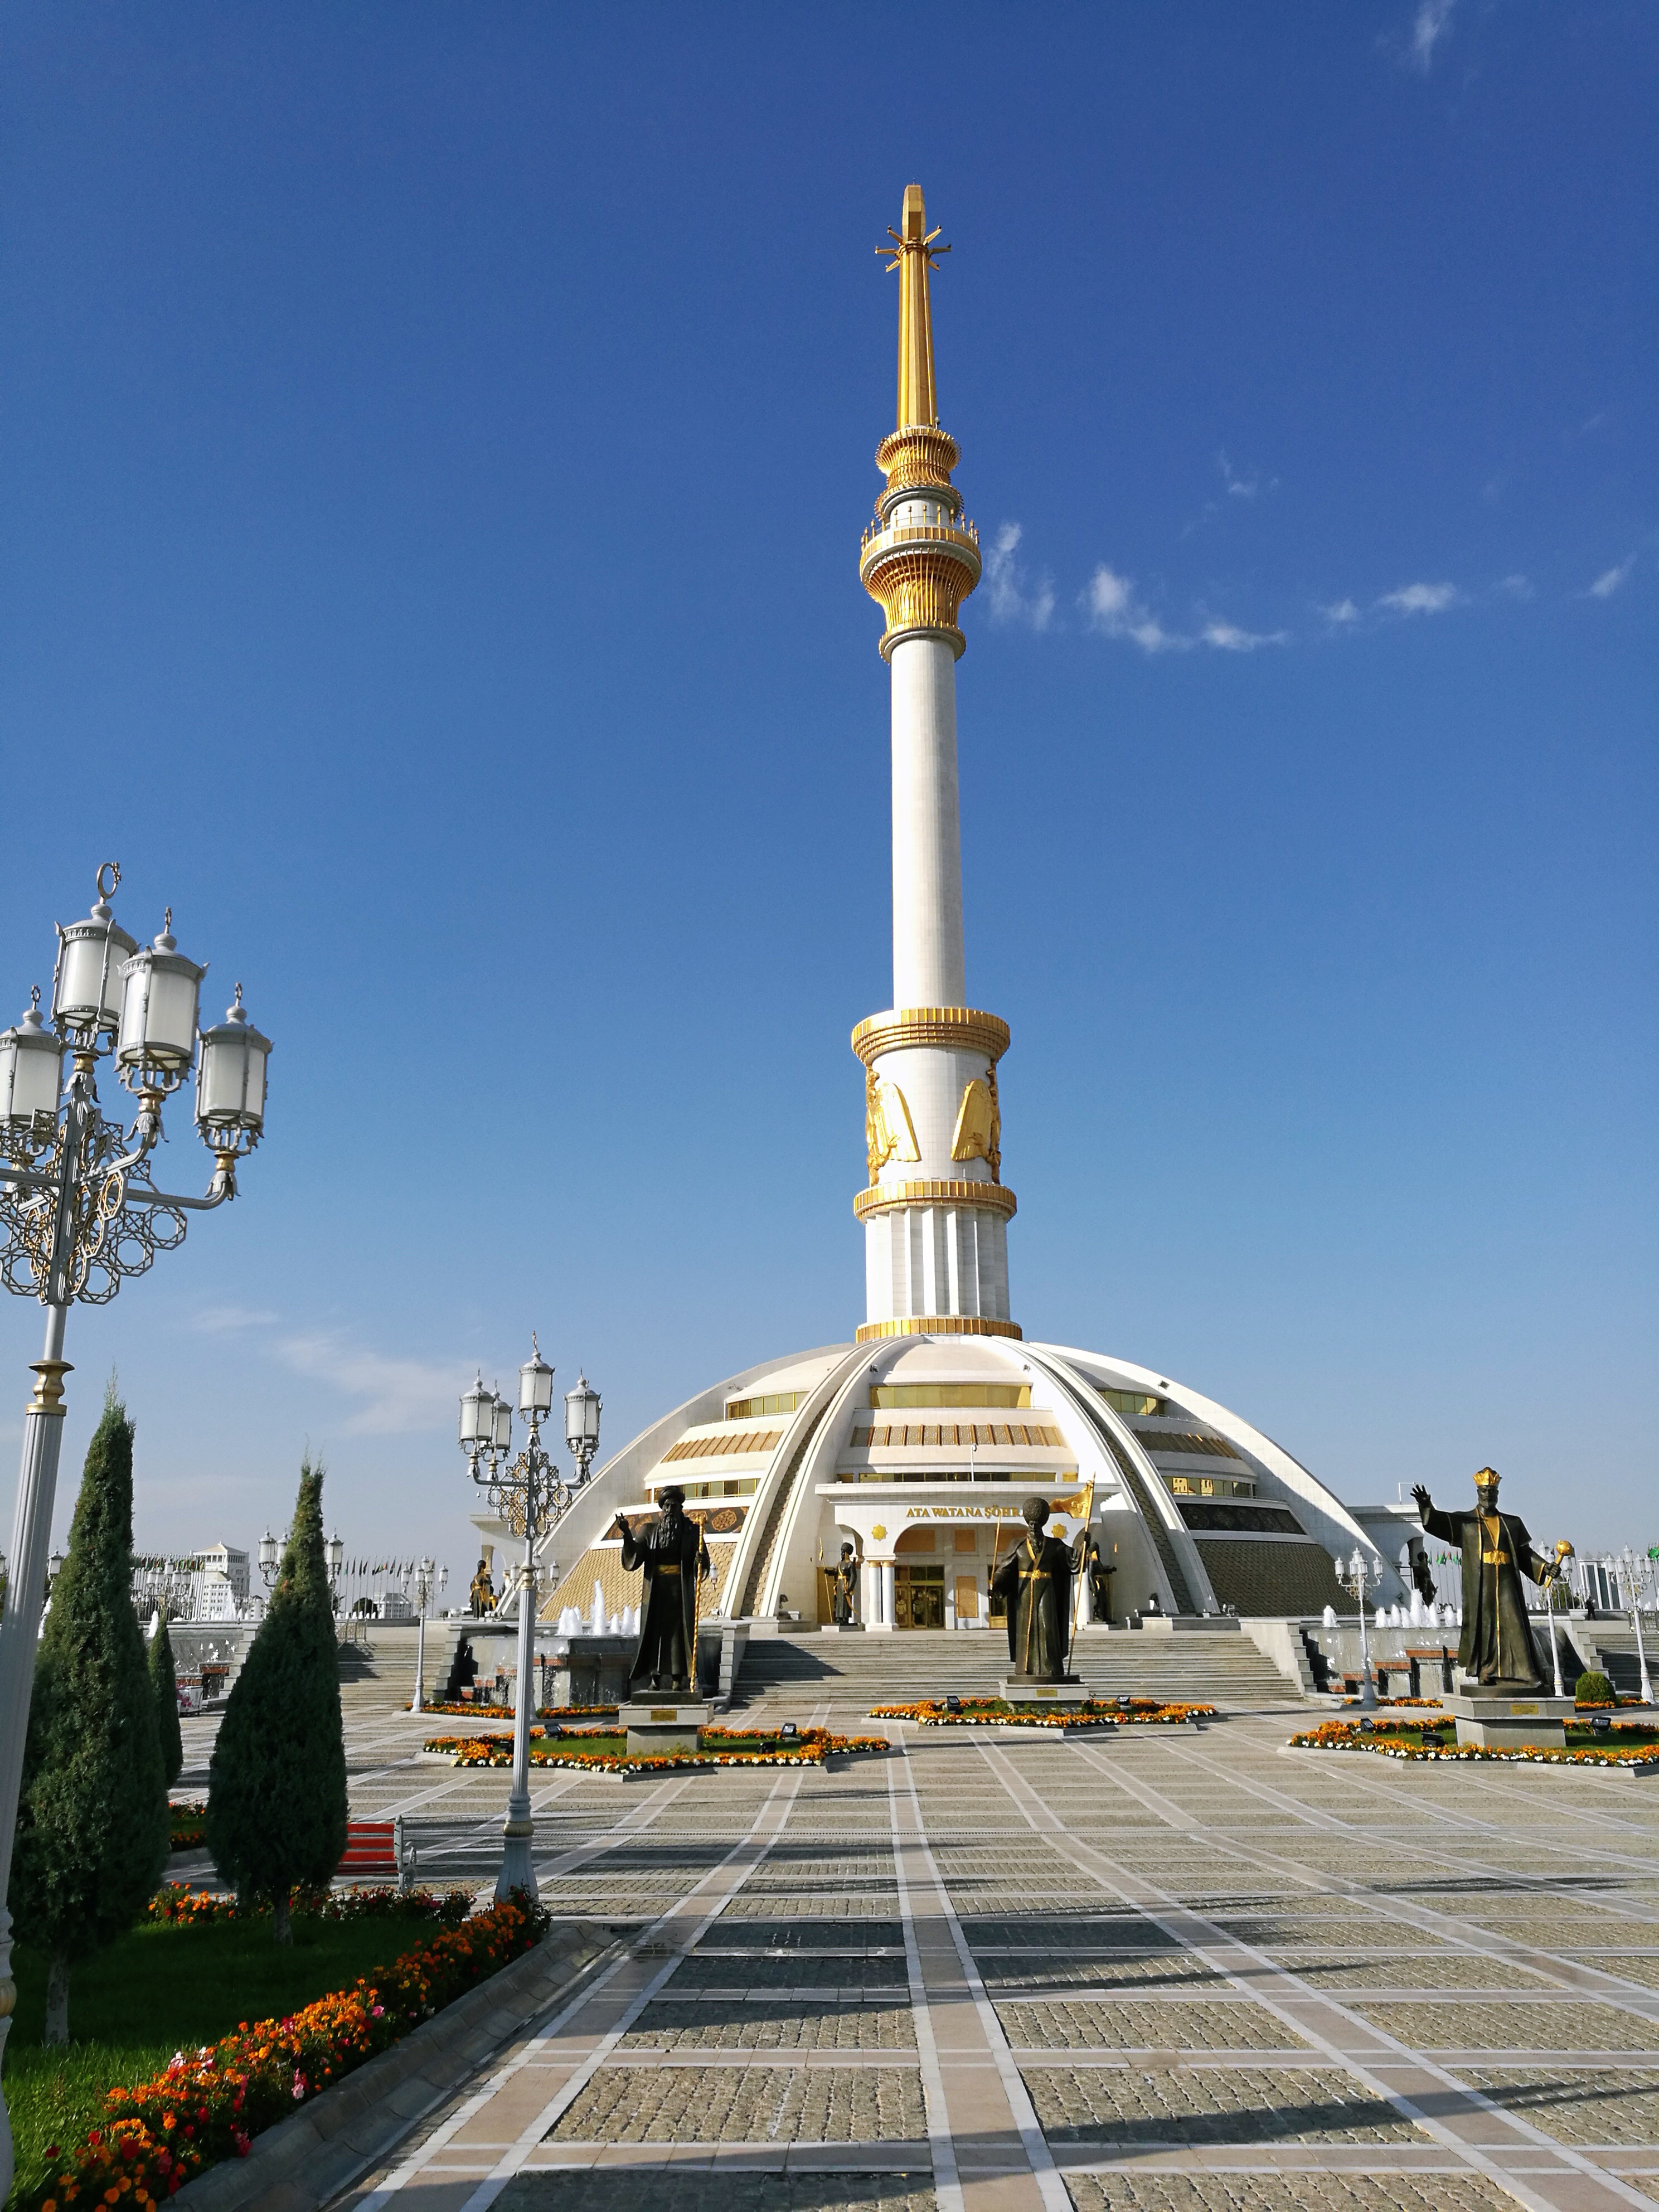 土库曼斯坦风景图片